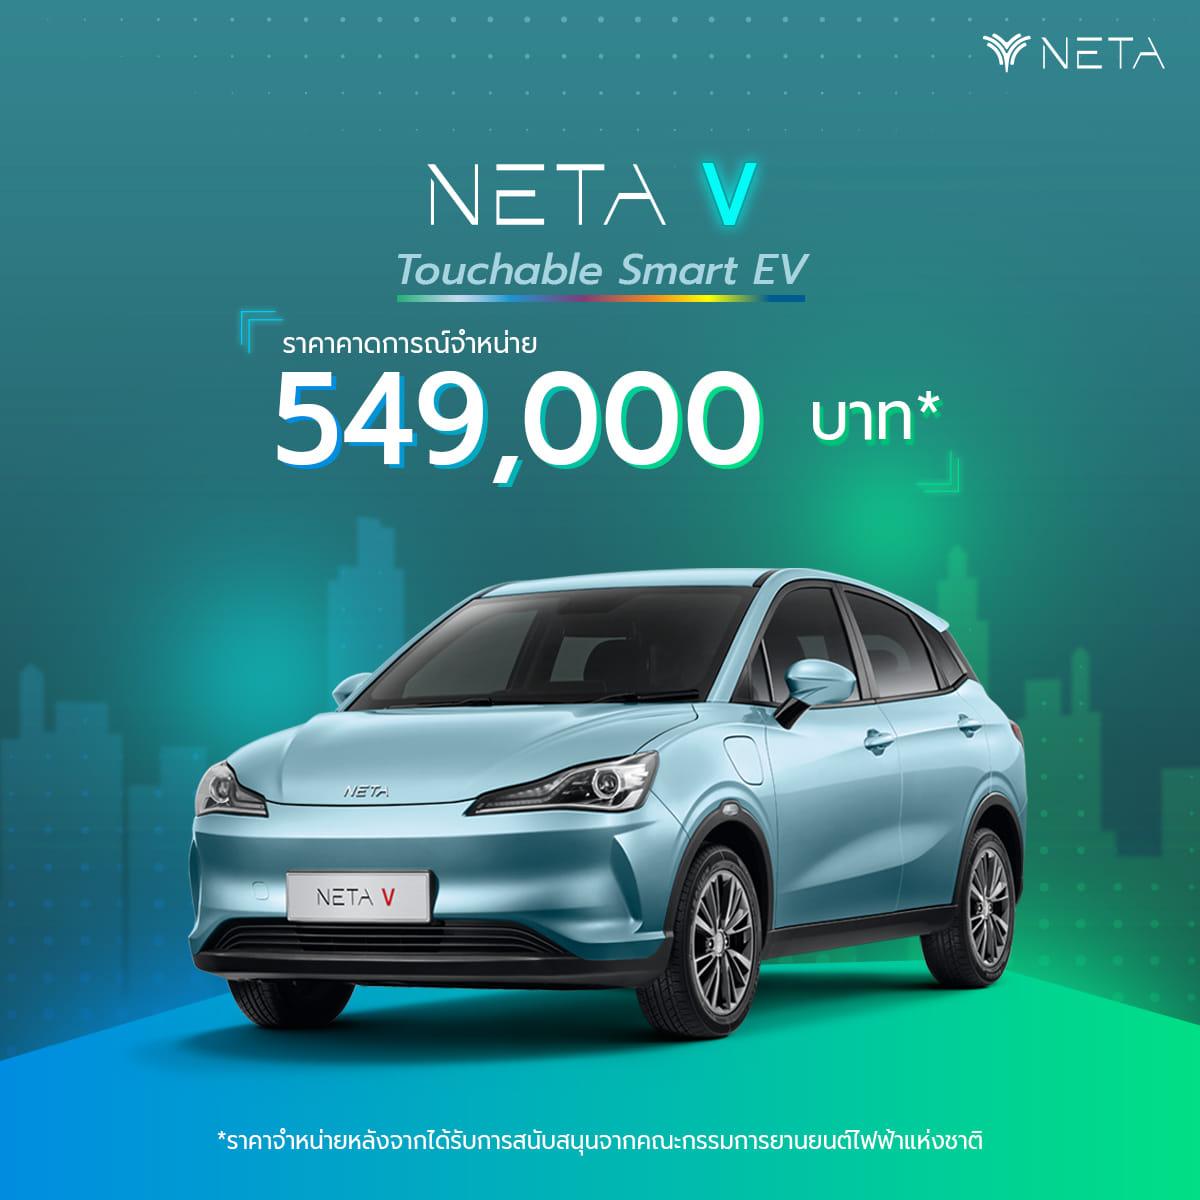 NETA V รถยนต์พลังงานไฟฟ้า 100%